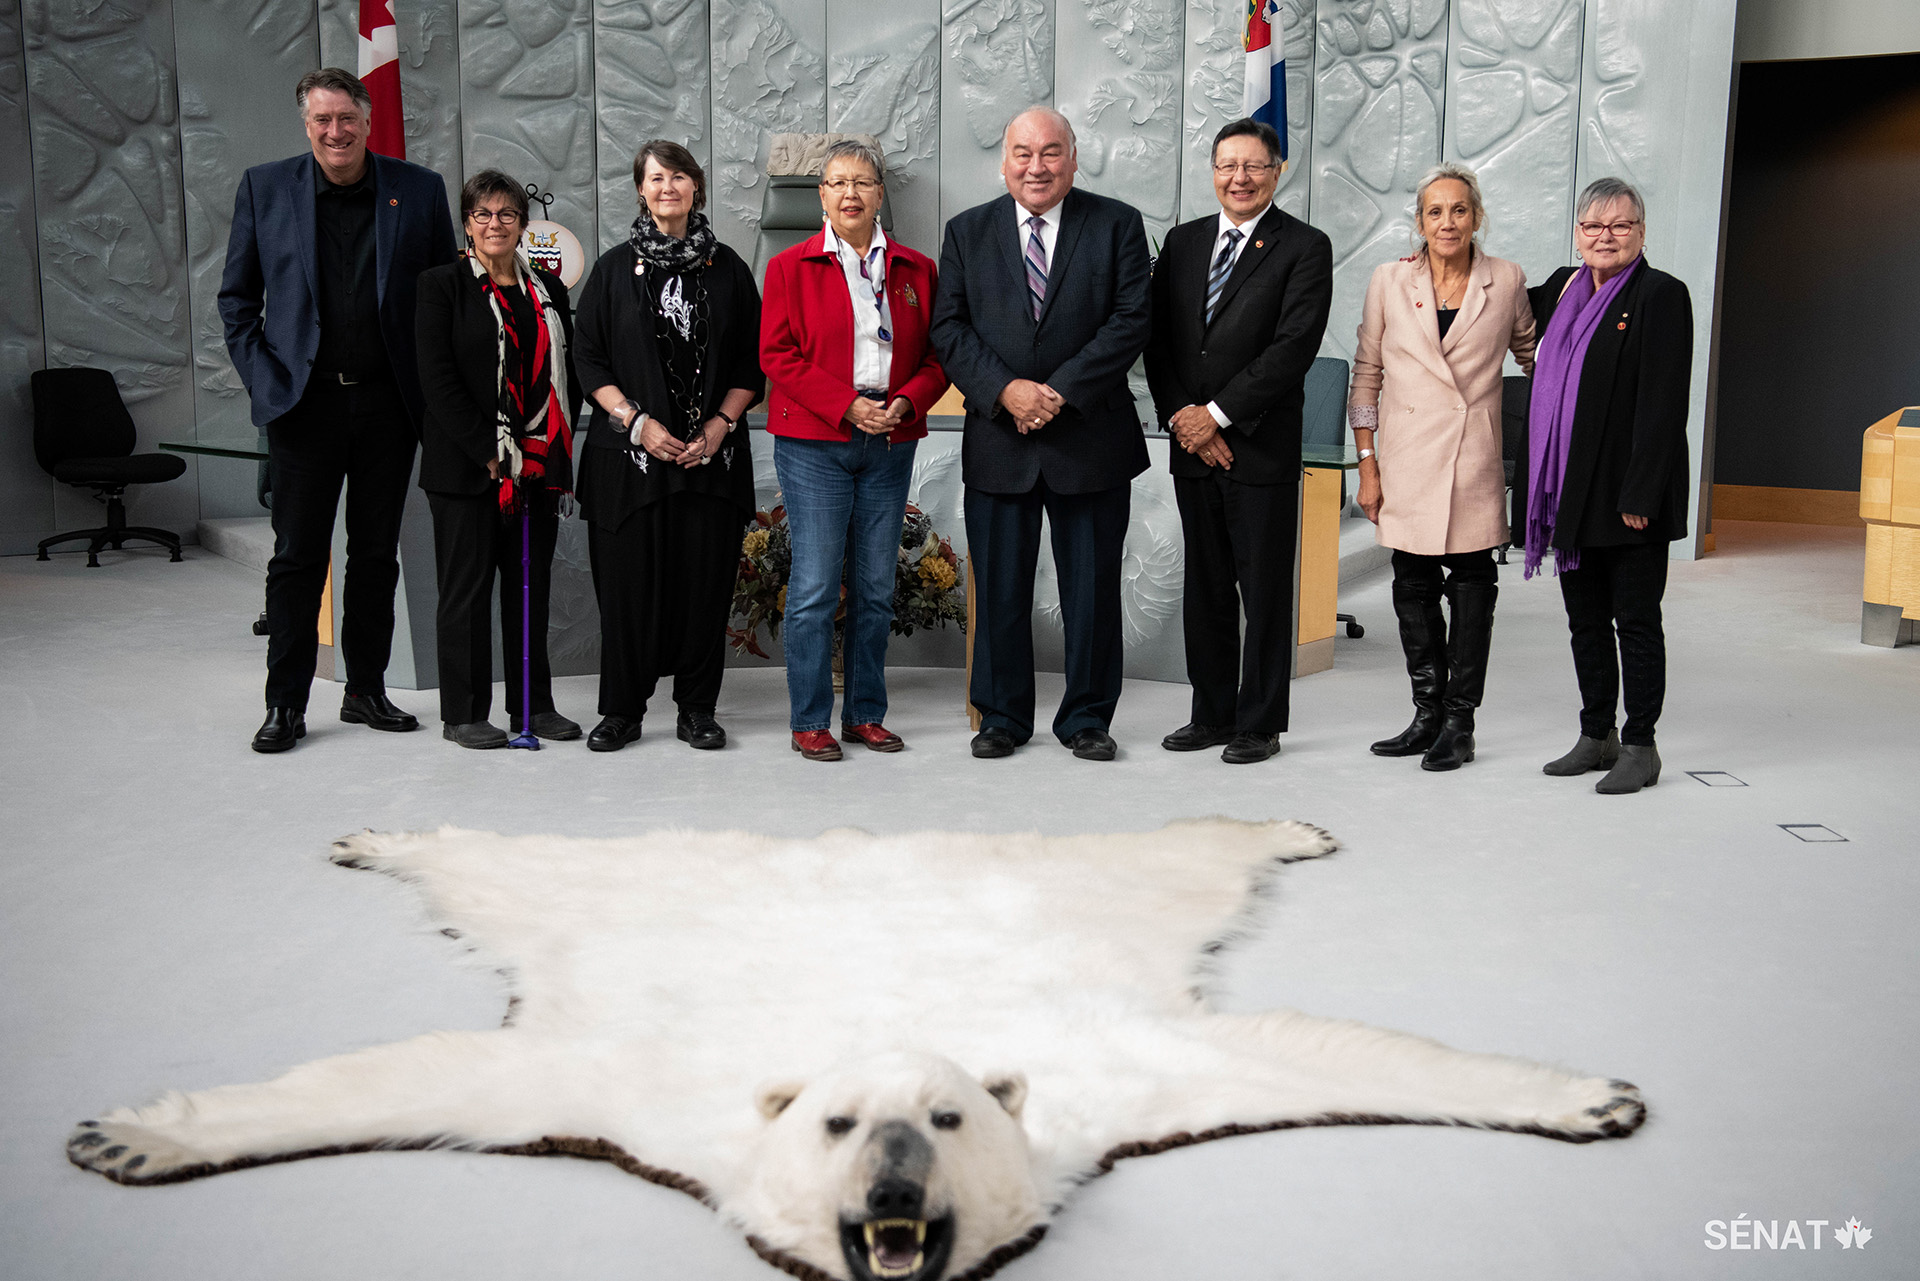 Des membres du Comité sénatorial des peuples autochtones en compagnie du premier ministre des Territoires du Nord Ouest, Bob McLeod, dans la chambre de l’Assemblée législative, à Yellowknife. Le premier ministre a salué le travail du comité dans sa mission d’étude.